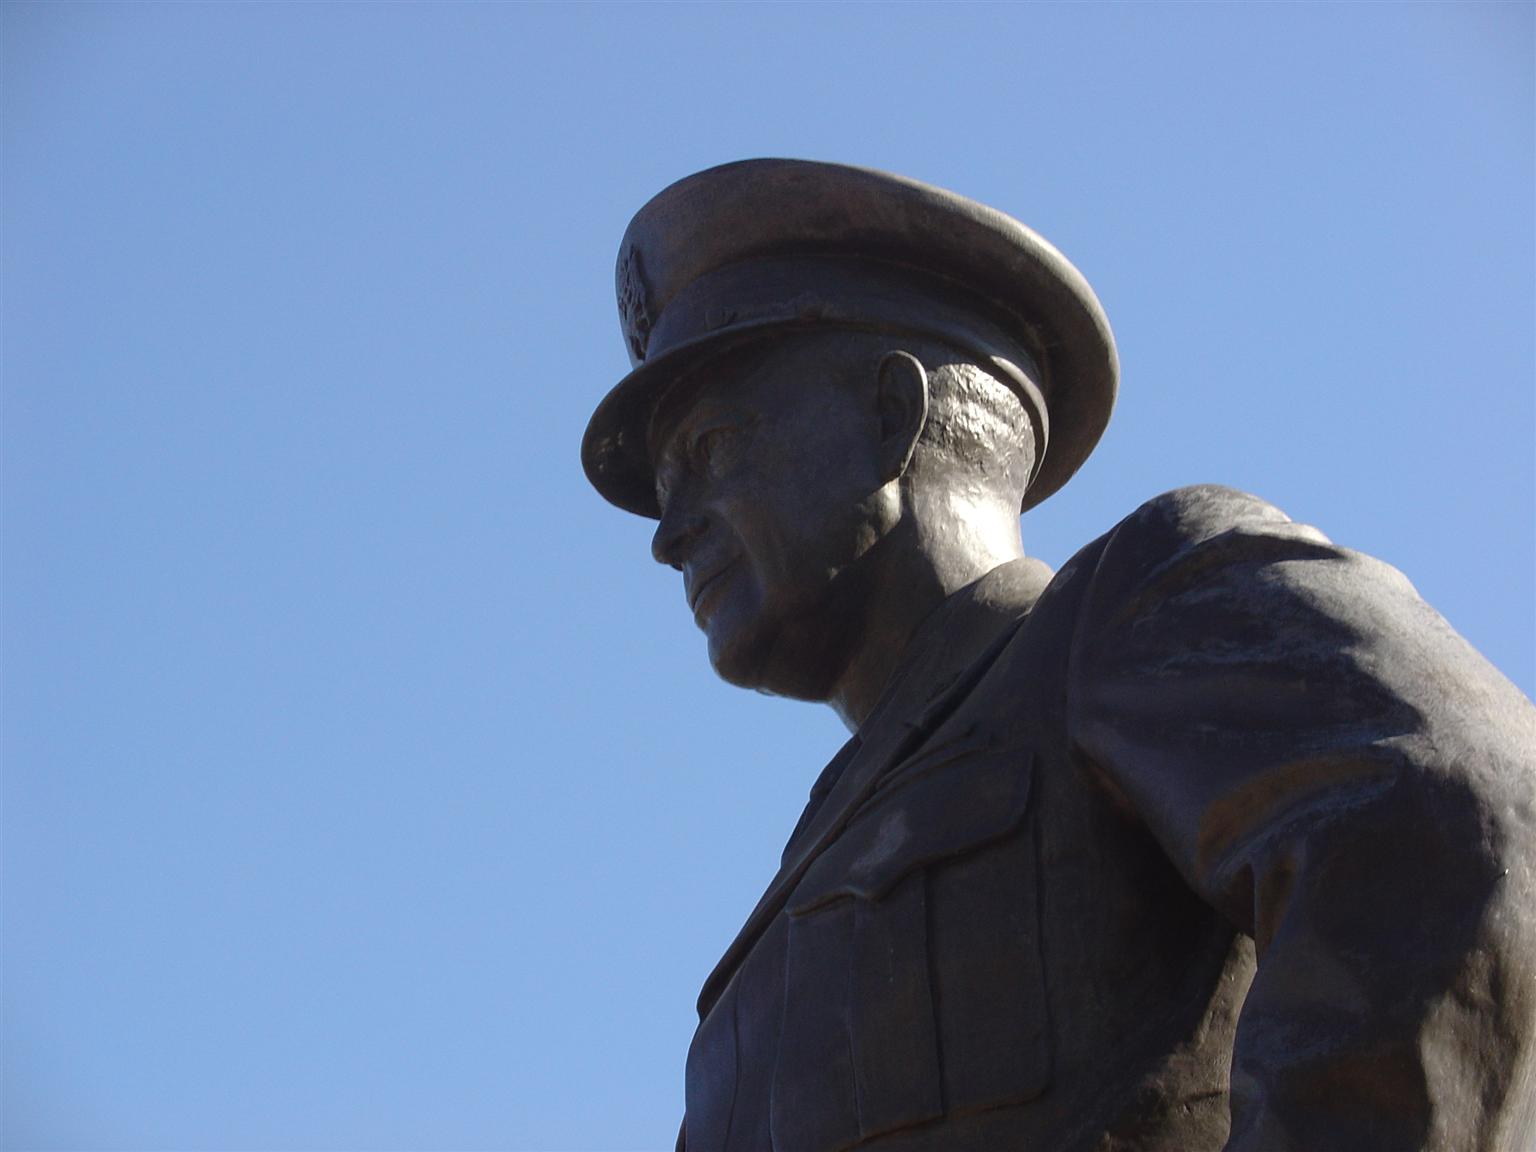 General Eisenhower in Abilene, Kansas